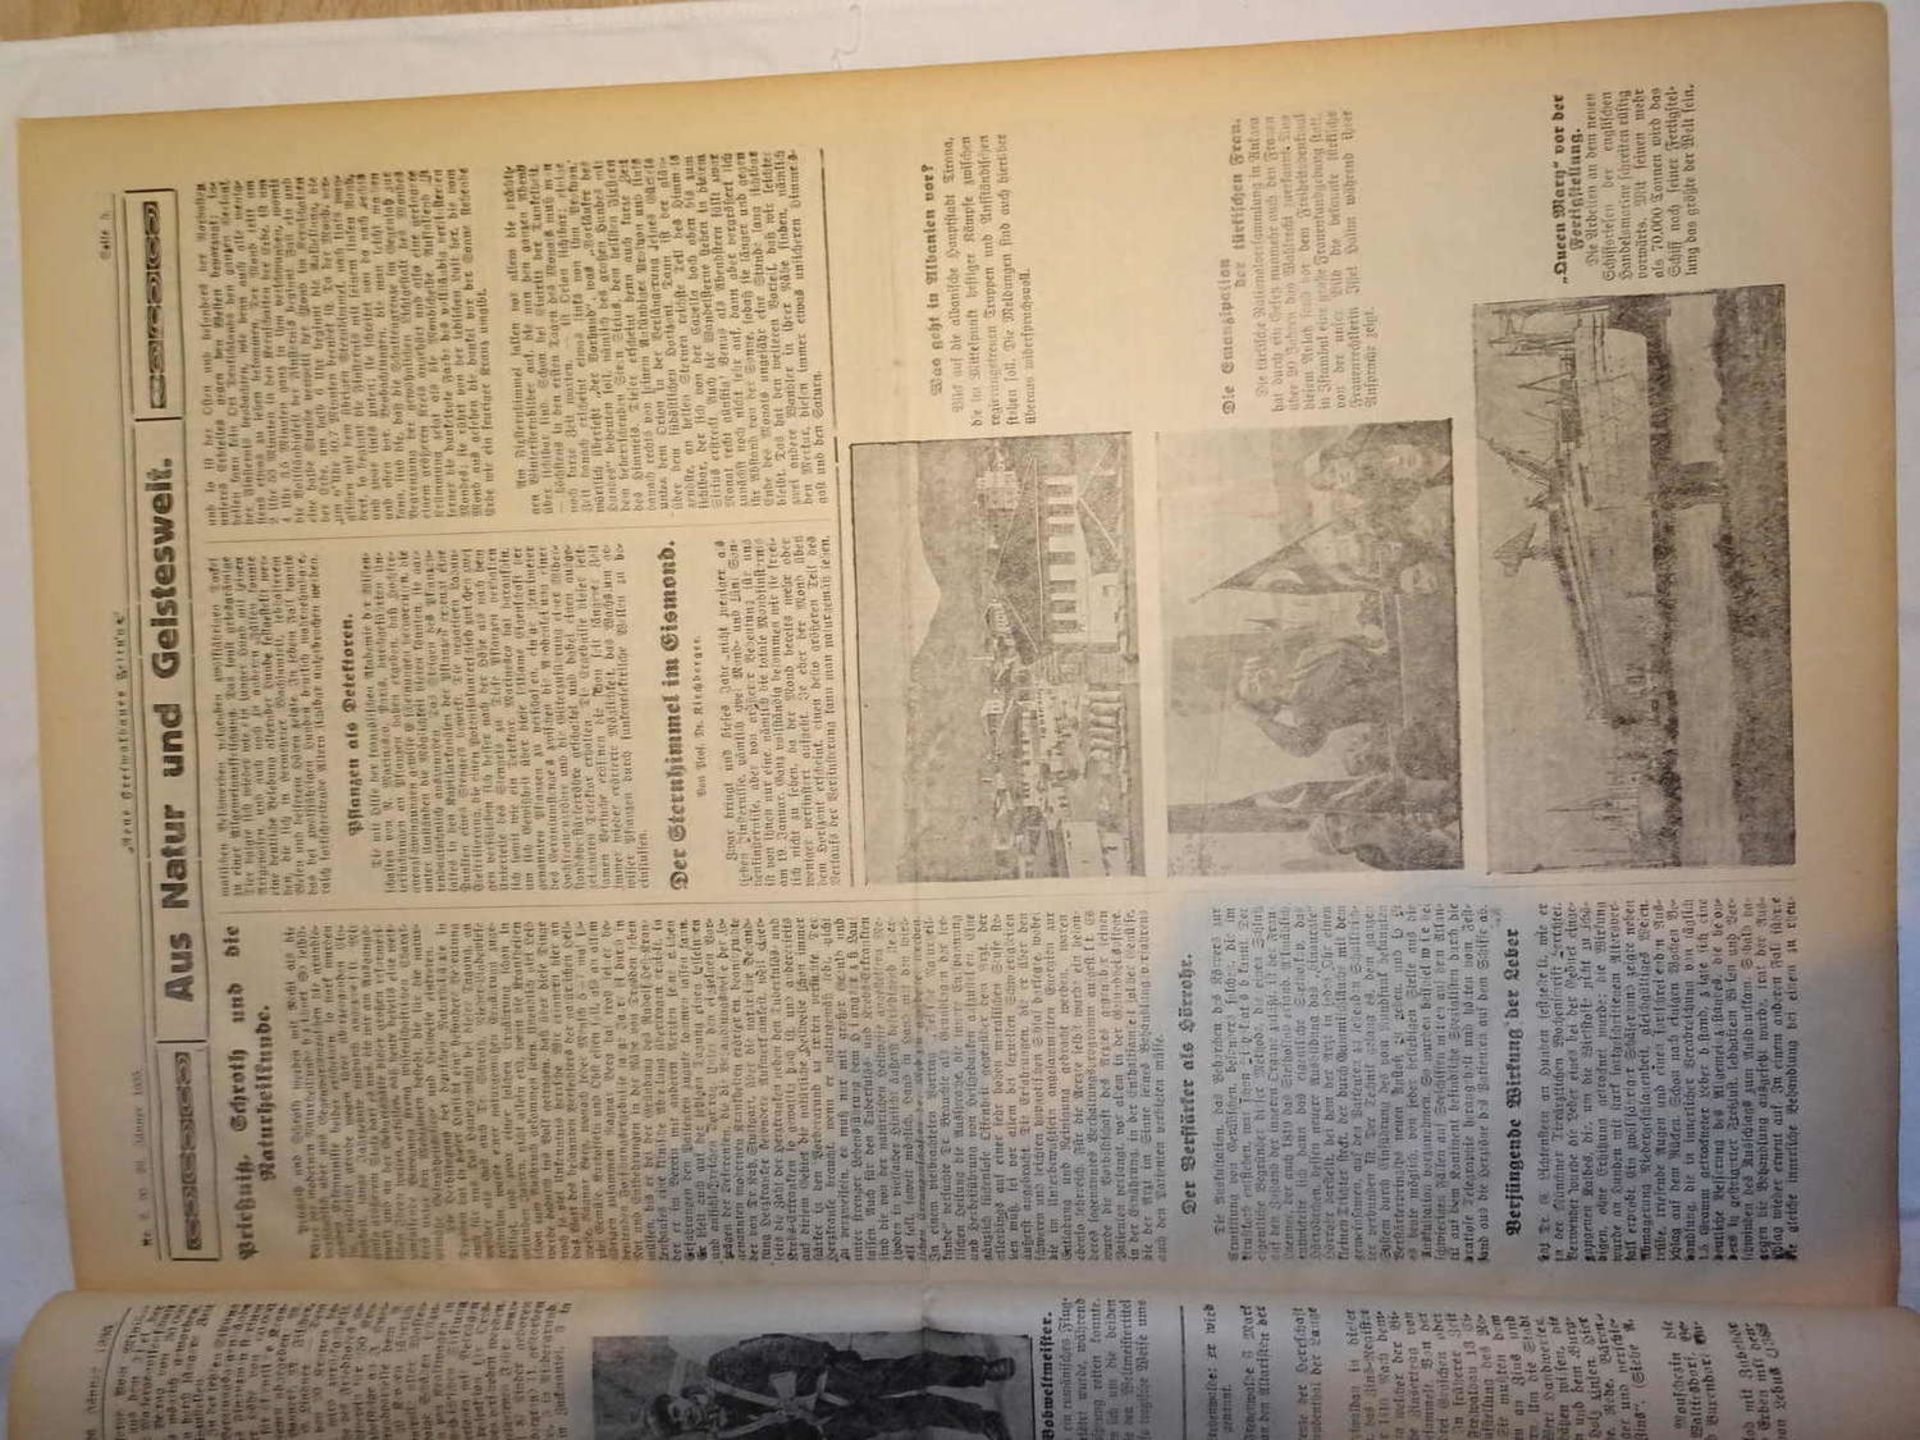 Neue Freiwaldauer Zeitung, 1. Jahrgang 1933, Nr. 1 - 13, gebunden. Seltene Ausgaben.Neue Freiwaldau